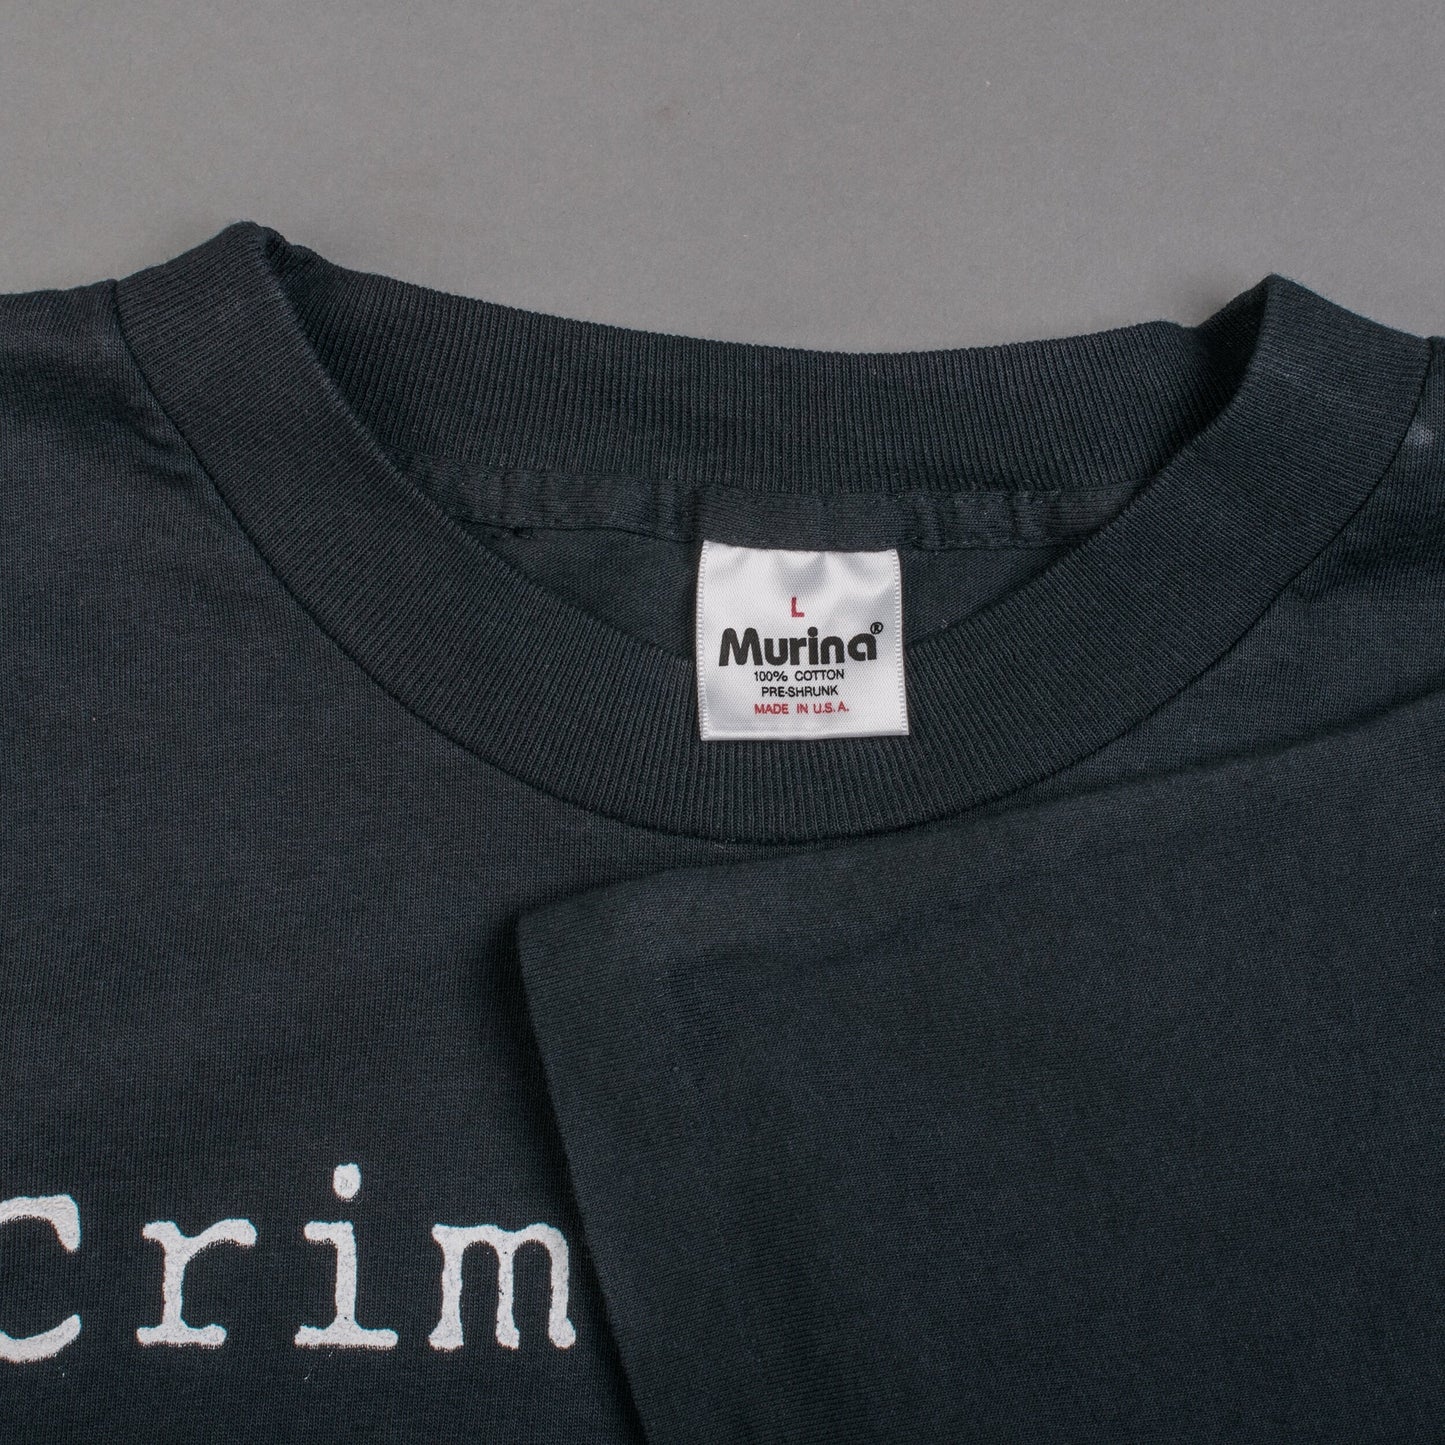 Vintage 90’s Bladder Bladder Bladder Crime Pays T-Shirt